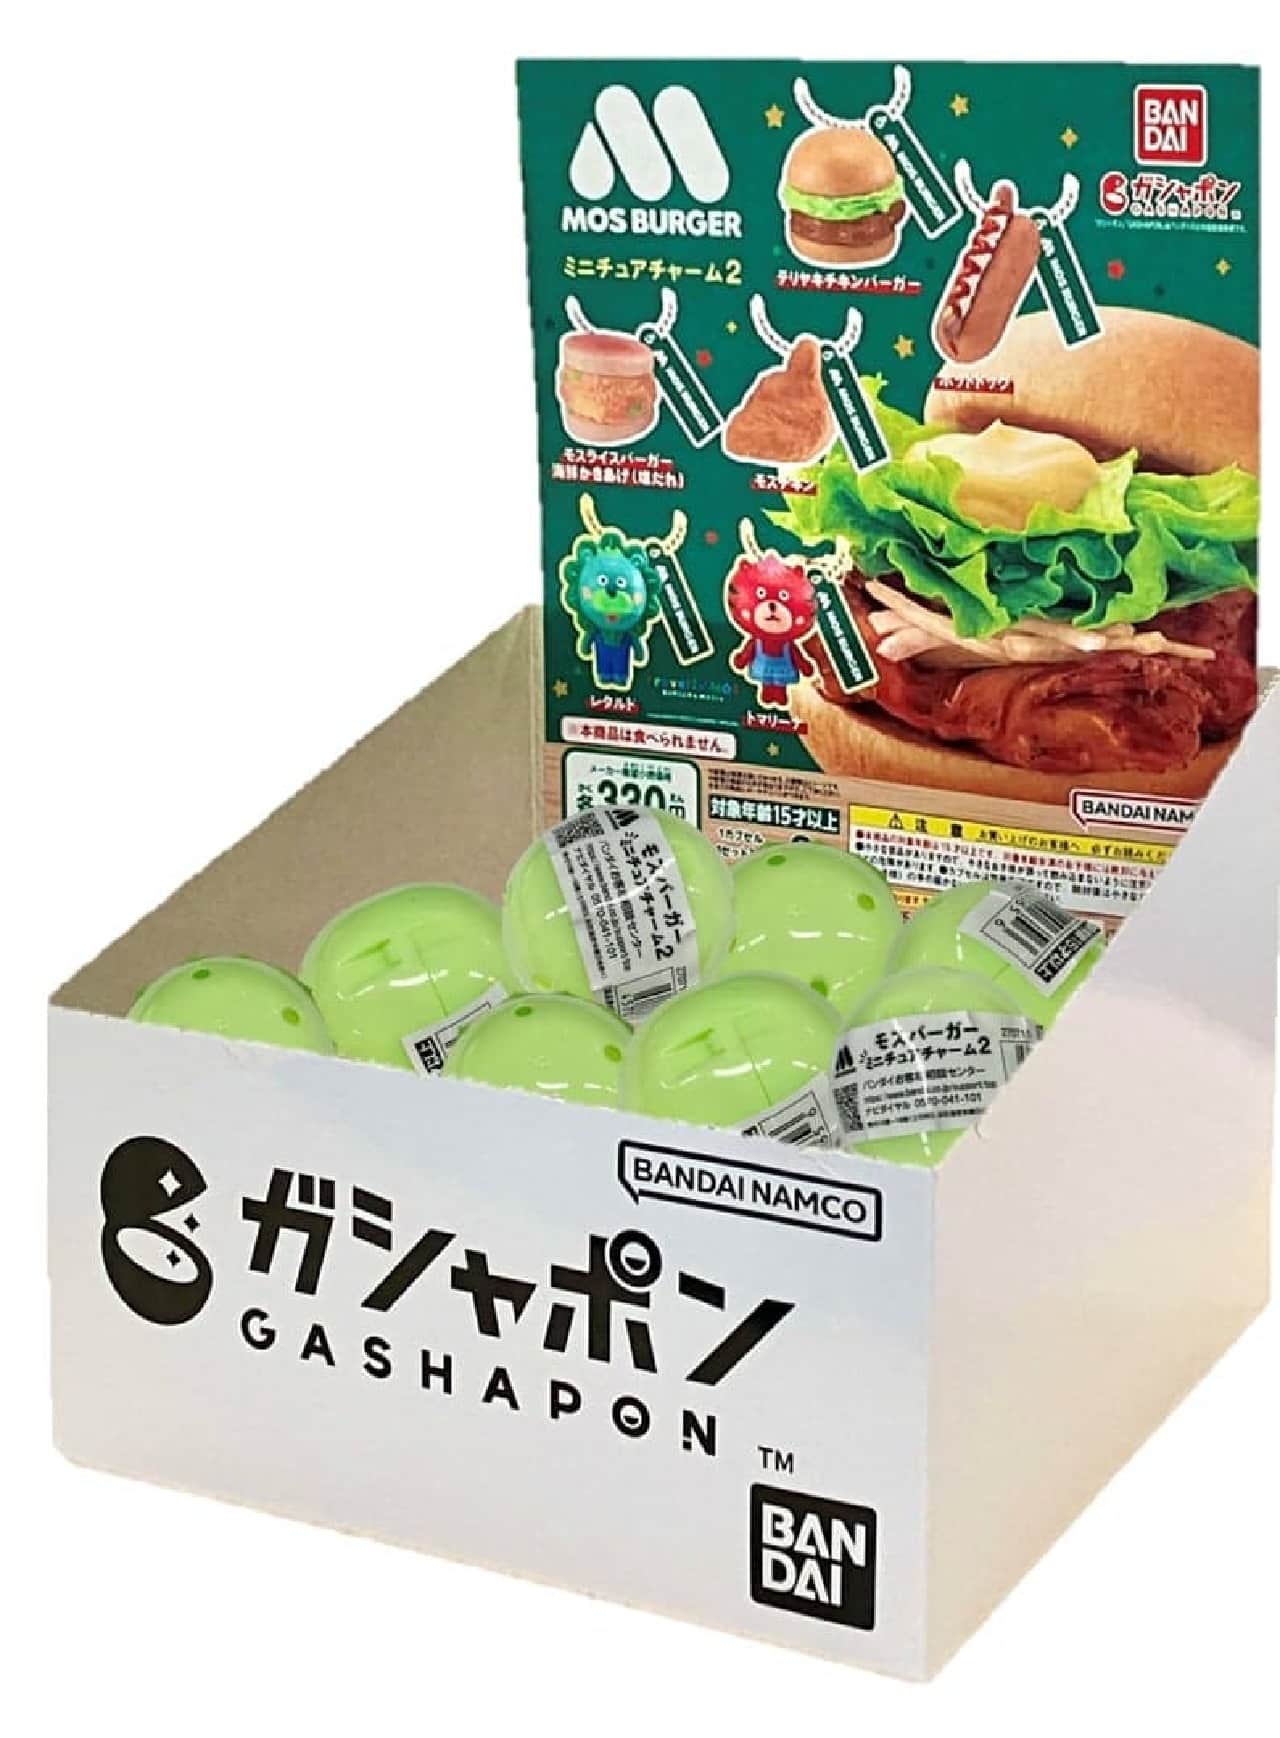 モスバーガー「GASHABOX モスバーガー ミニチュアチャーム2」が1月26日に発売開始 画像2